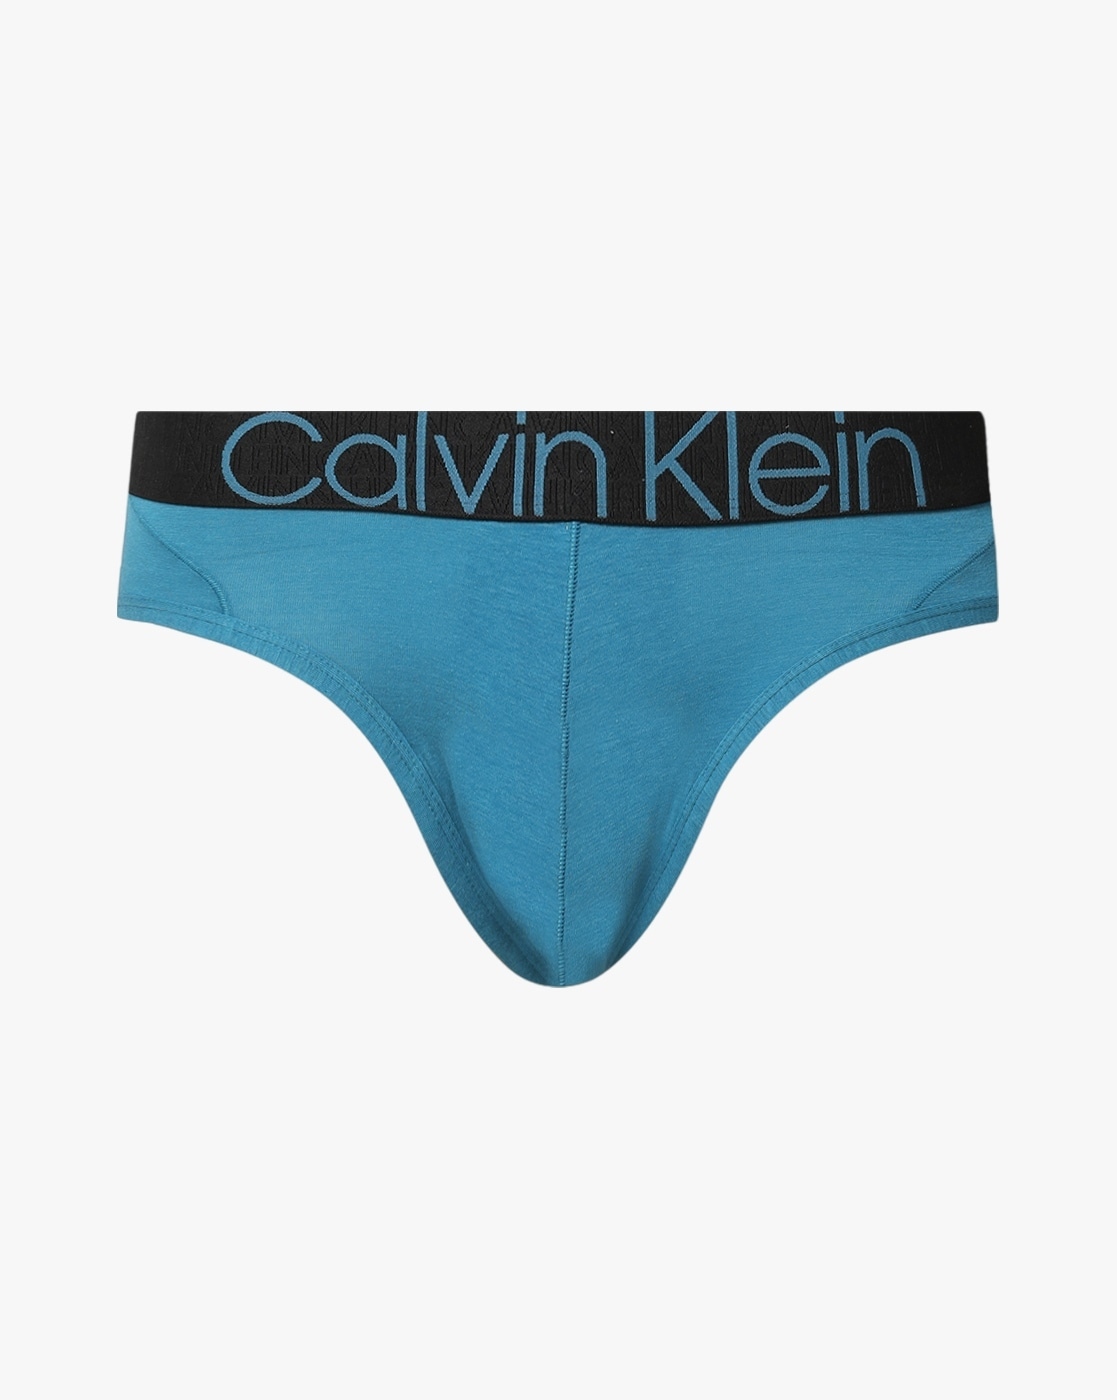 Blue Men Apparel Accessories Calvin Klein Underwear - Buy Blue Men Apparel  Accessories Calvin Klein Underwear online in India